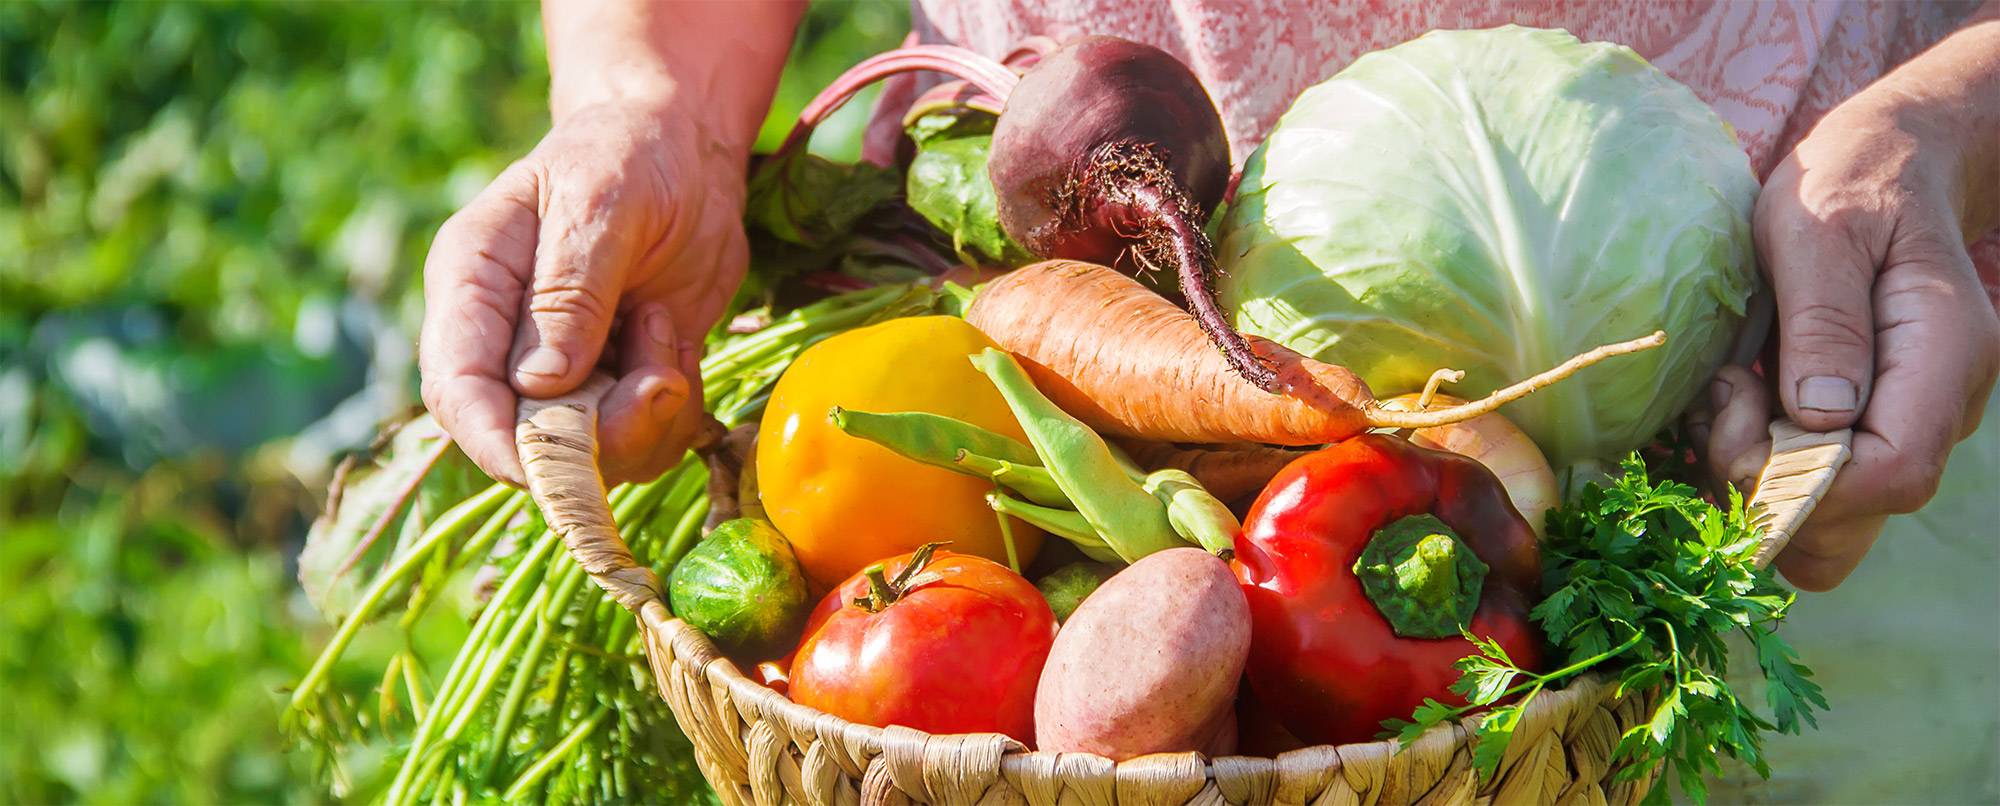 Venez composer vos paniers bio de légumes et de fruits frais et de saison Chez Saveur Nature